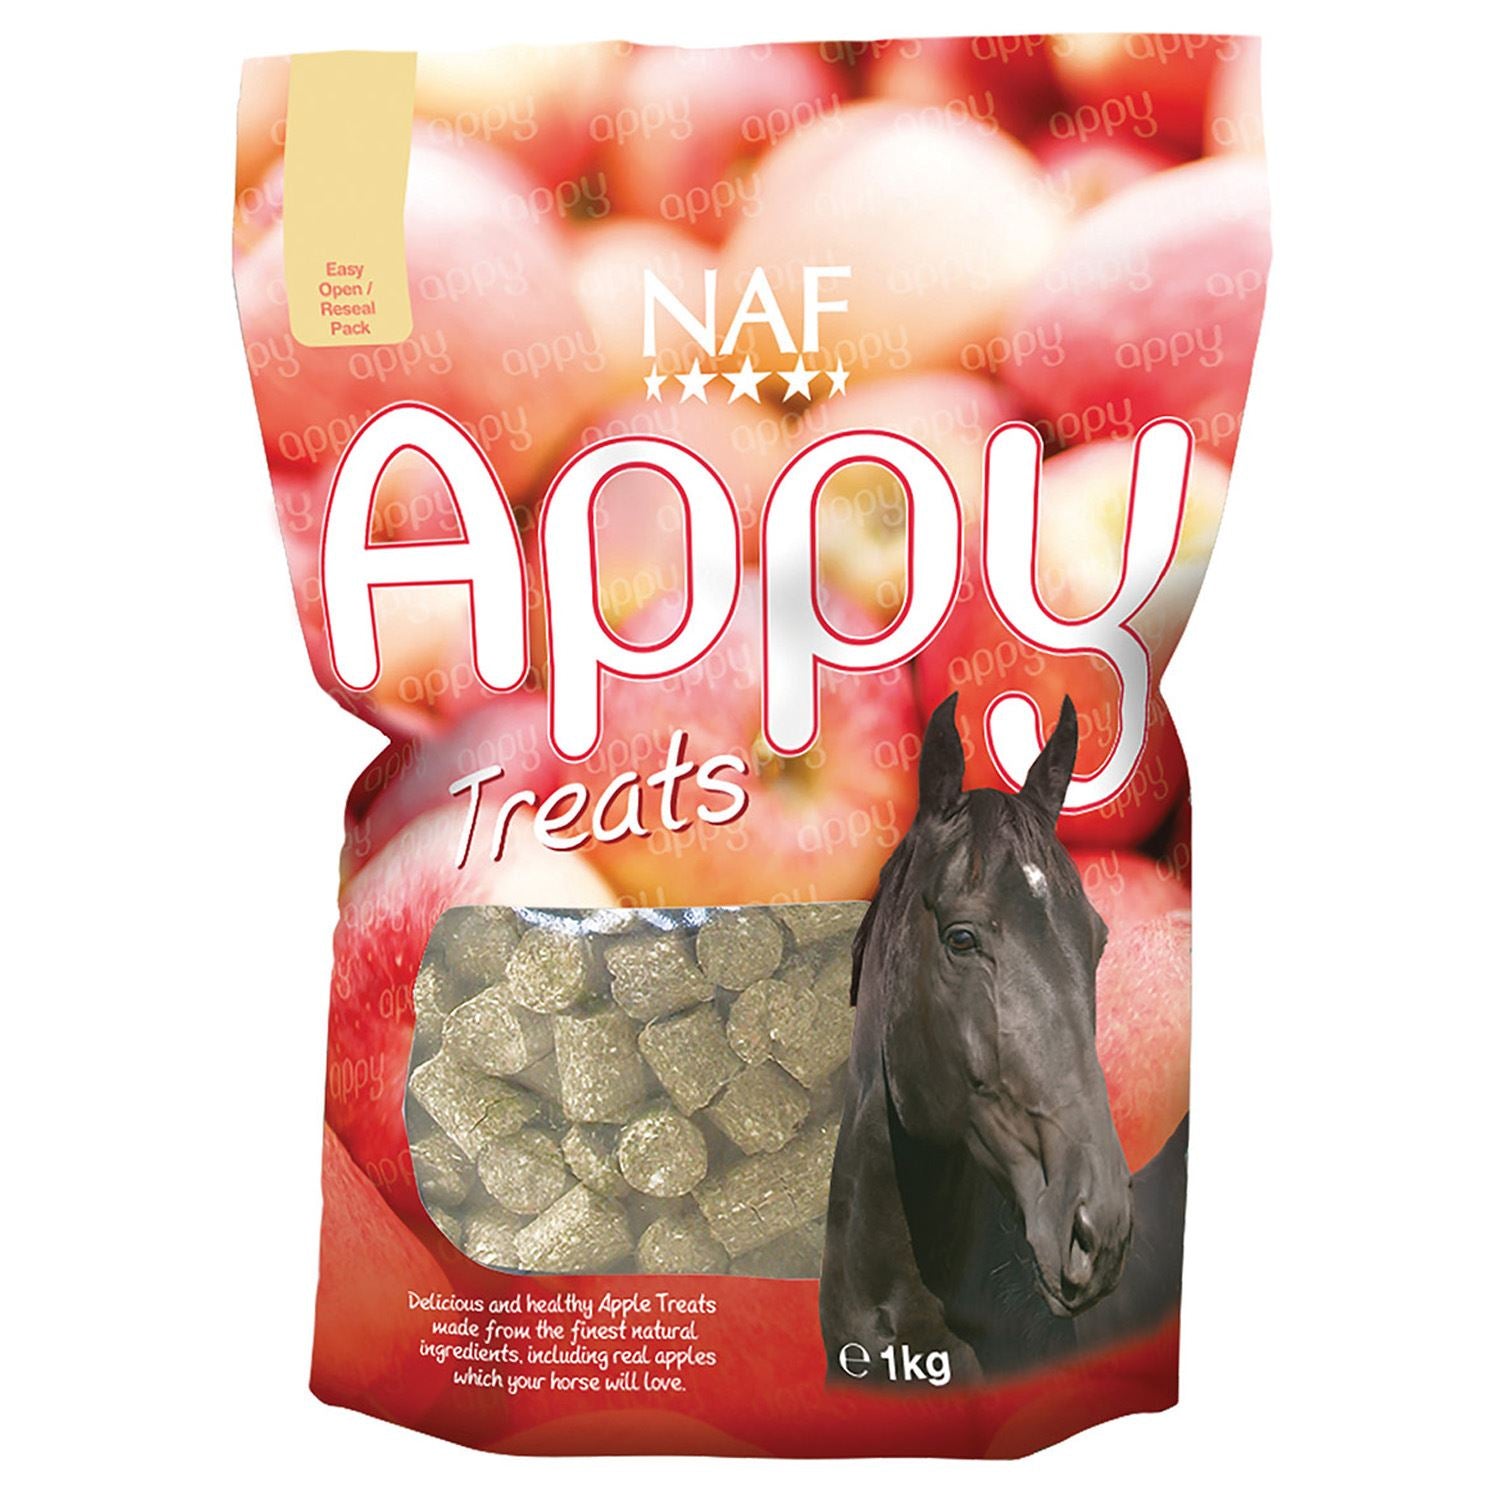 NAF Appy Treats - Just Horse Riders